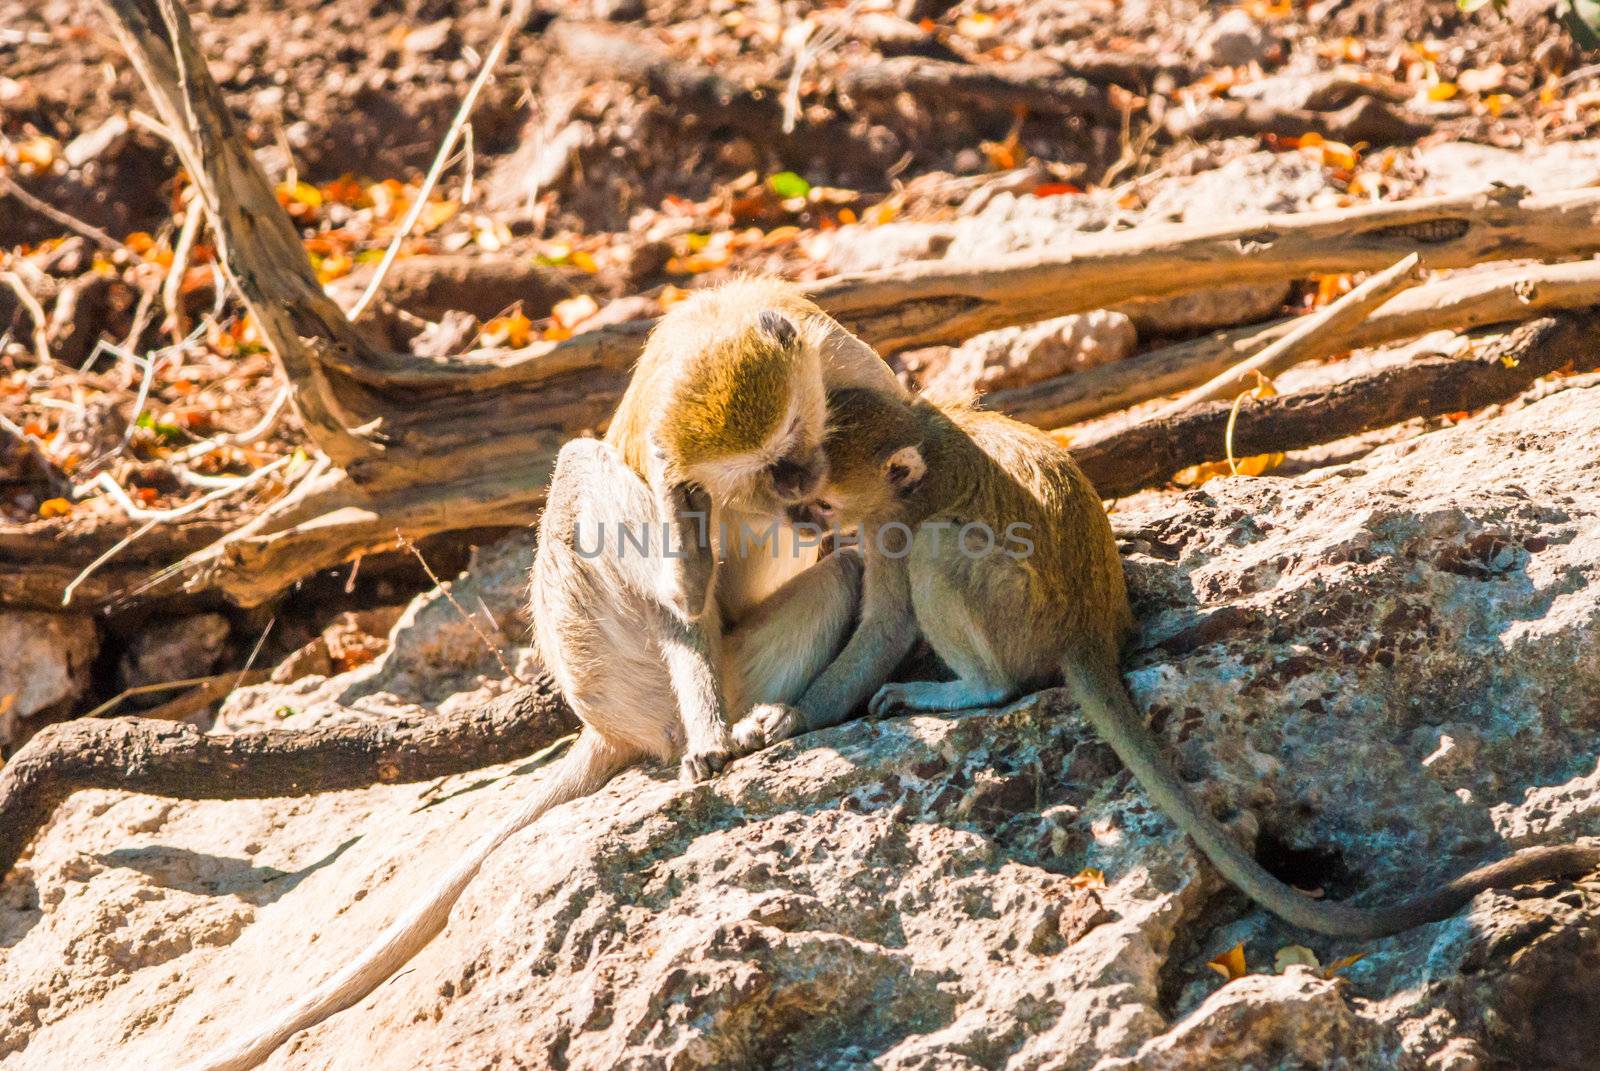 Vervet monkeys by edan